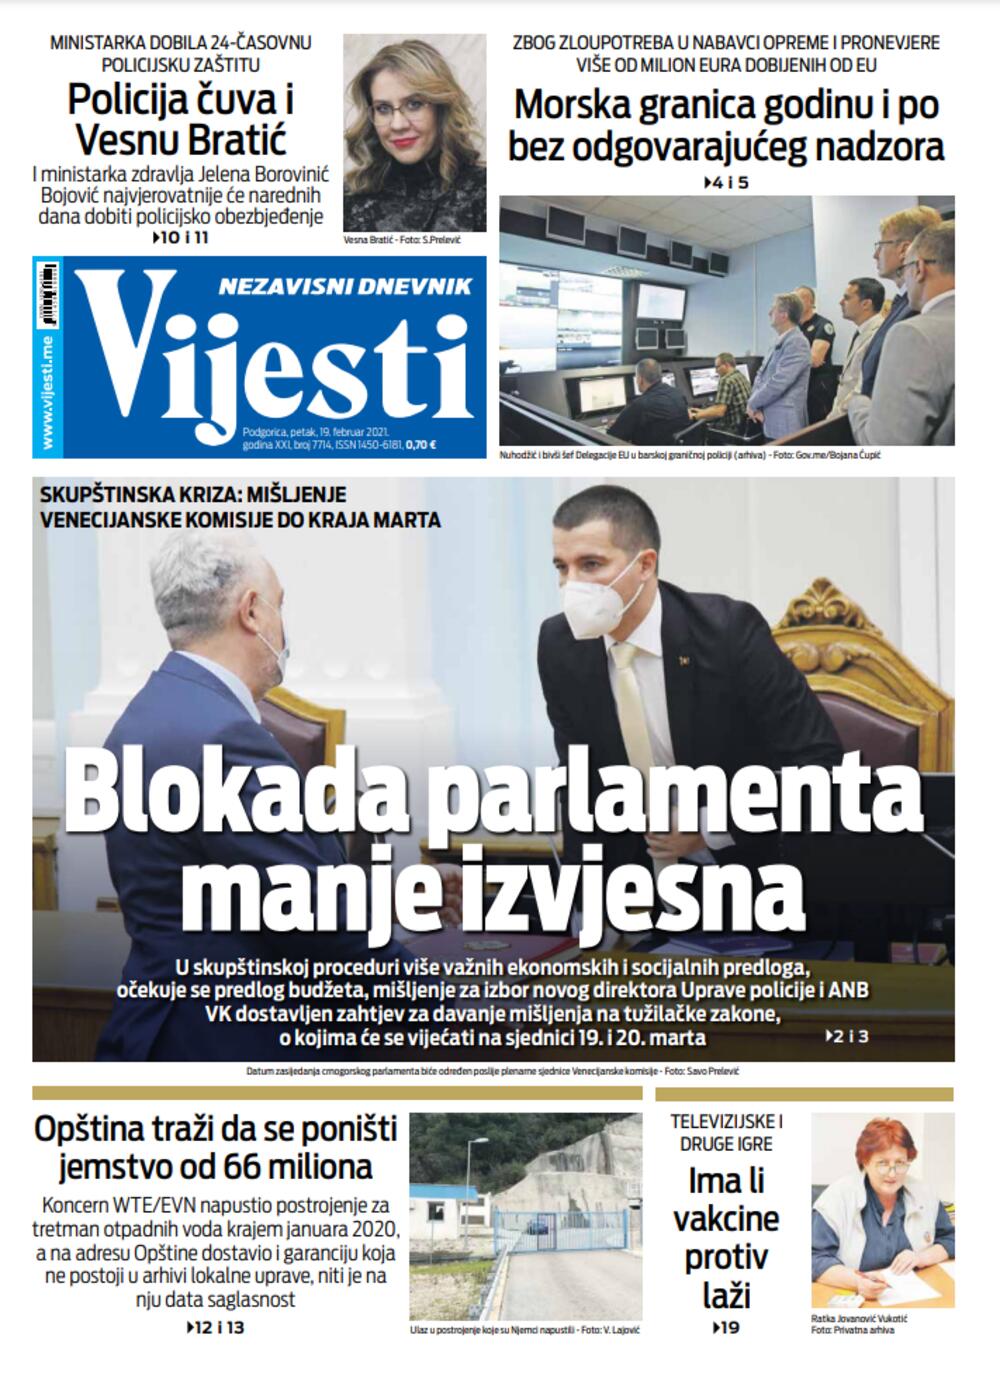 Naslovna strana "Vijesti" za petak 19. februar 2021. godine, Foto: Vijesti